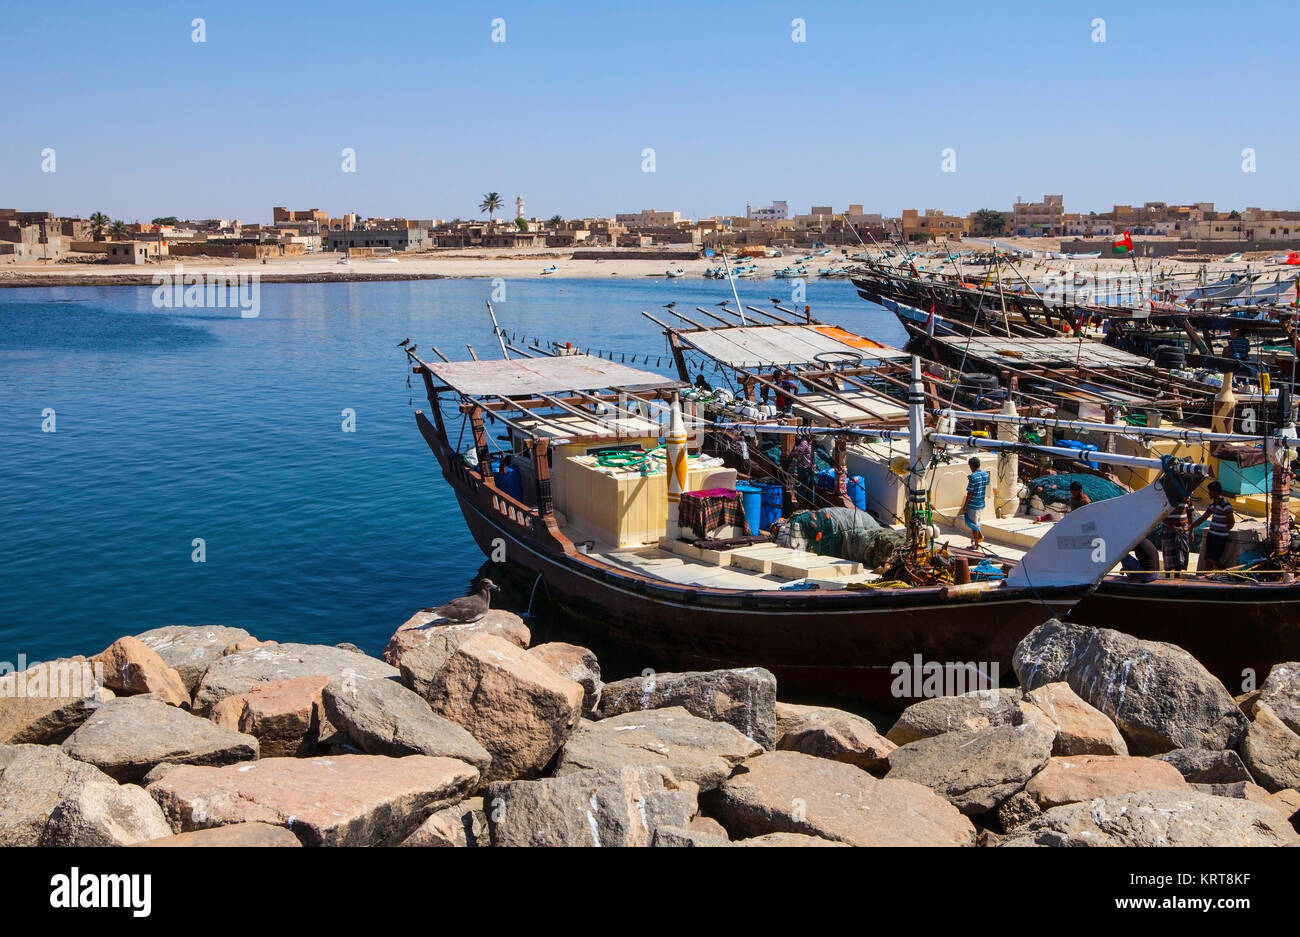 MIRBAT, OMAN - JANUARY 07,2016: Fishing boats (Dhow) in Mirbat port. Dhofar, Oman. Stock Photo